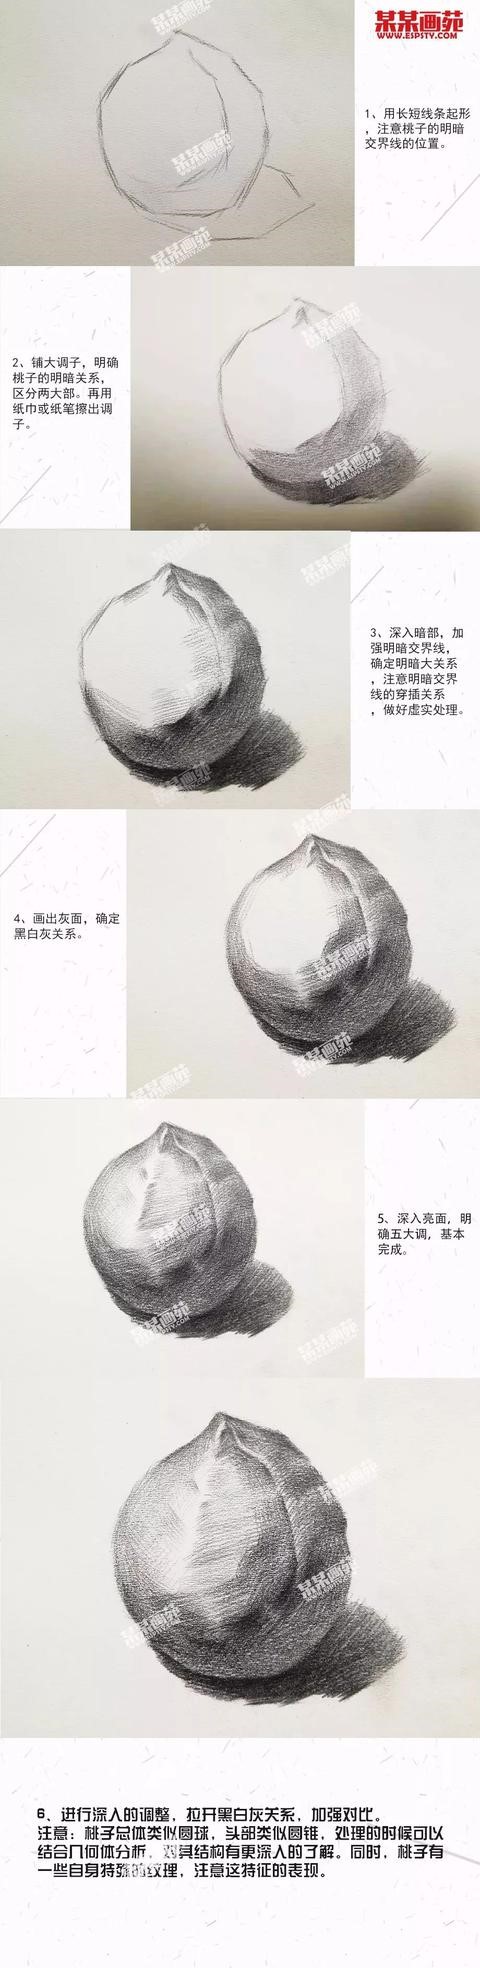 北京美术培训知美画室素描桃子与水粉菠萝详细解析